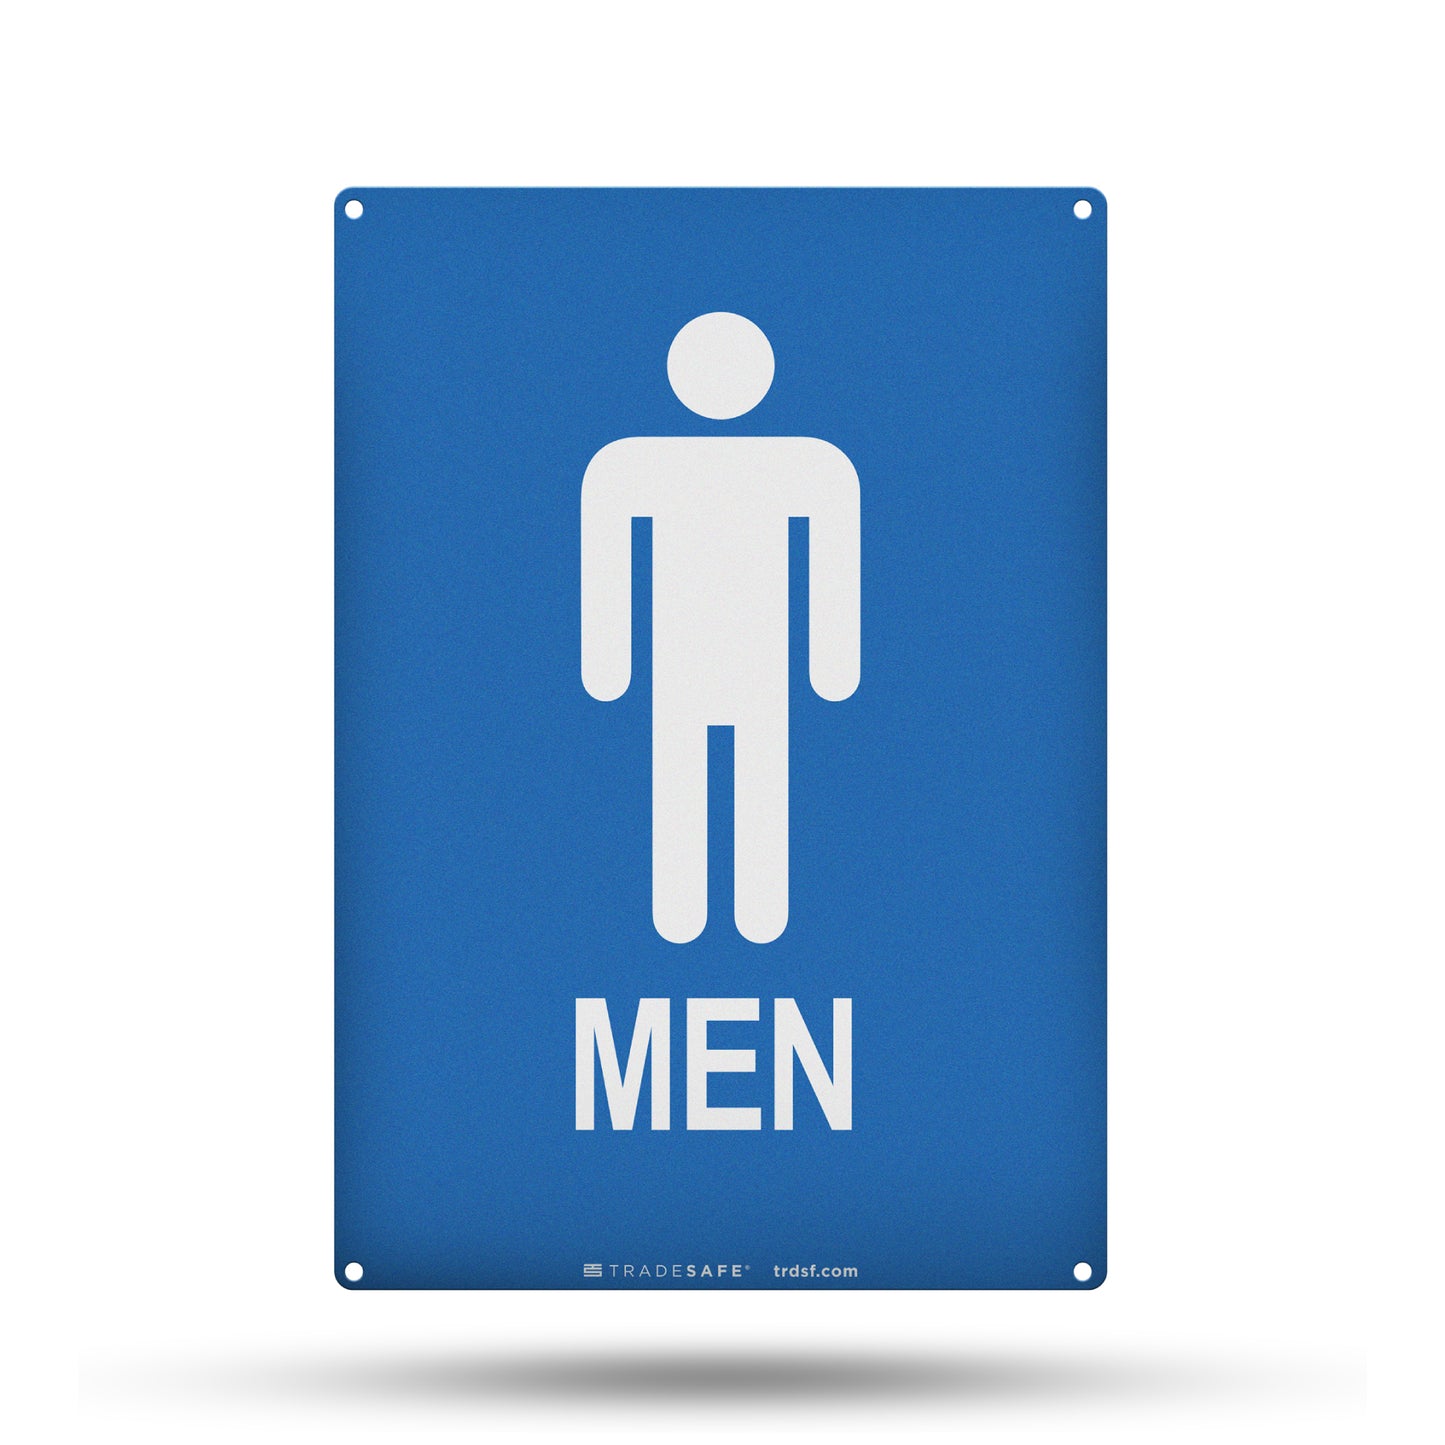 men's restroom sign